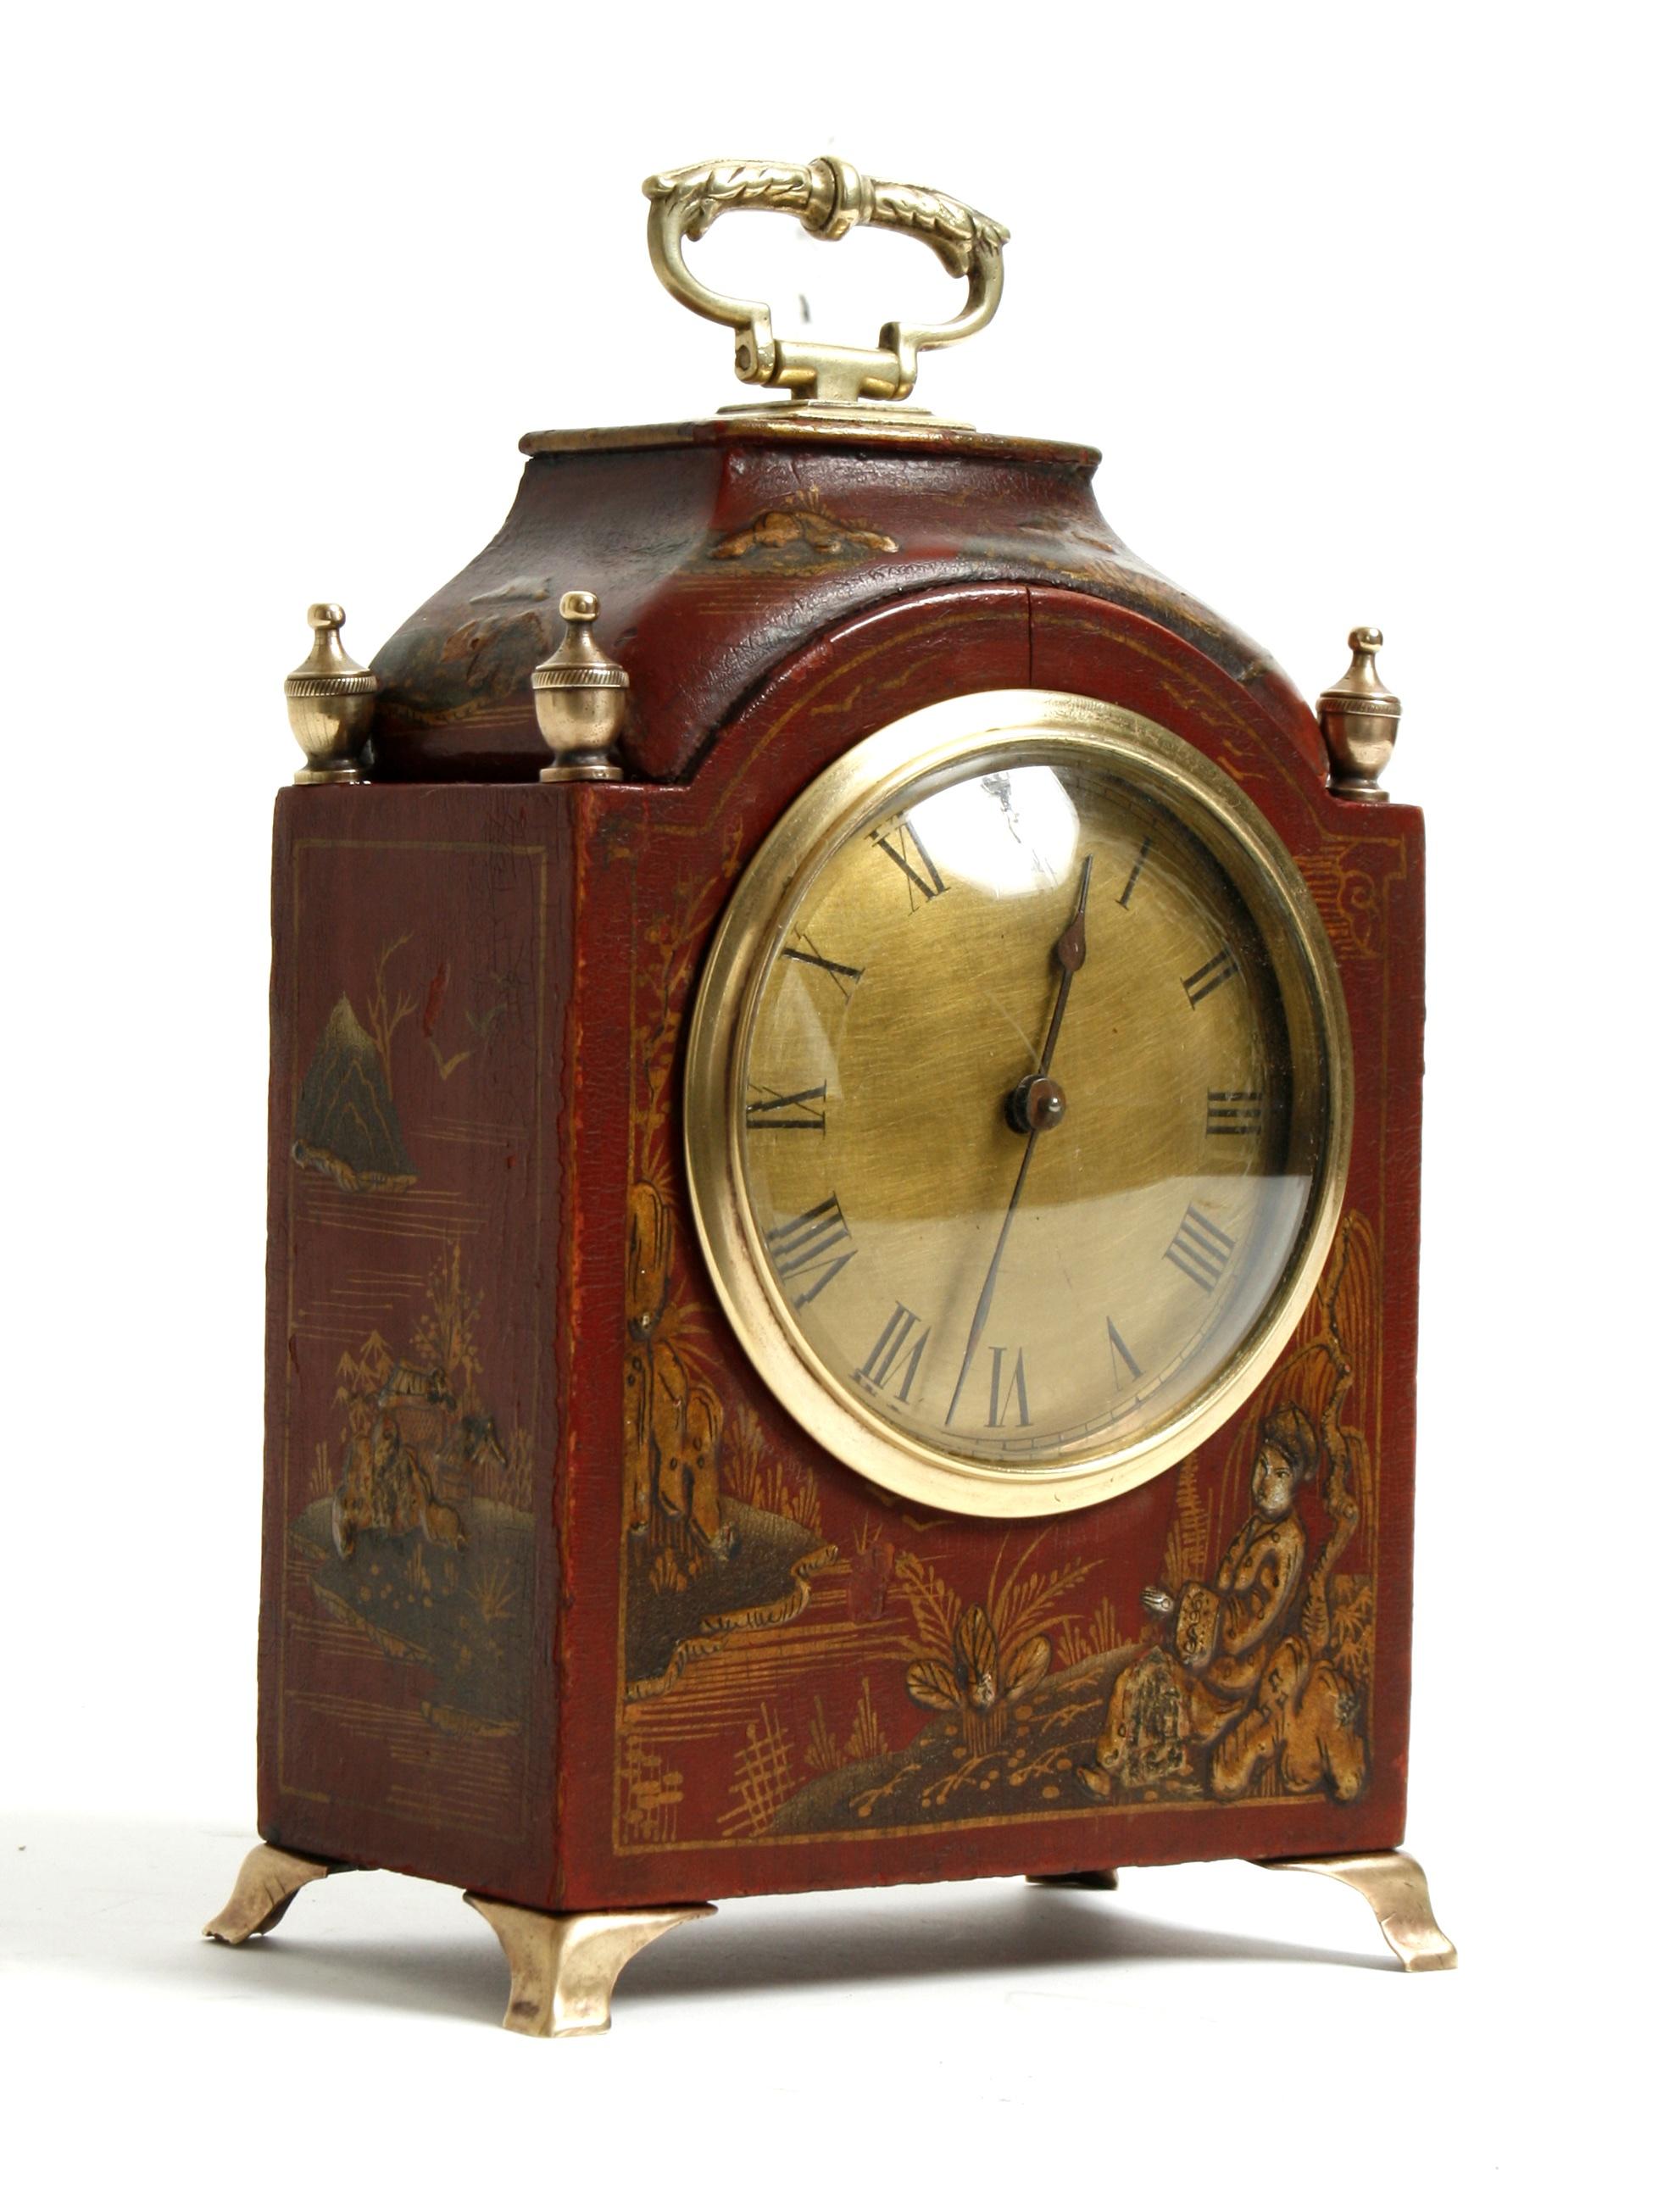 Diese schöne Uhr, die spätere französische Werke enthält, ist mit Szenen aus dem asiatischen Landleben verziert. Er hat einen dekorativen Messinggriff, Endstücke, Gesicht und Beine. Das Holzgehäuse ist rot lackiert mit erhabenen Details in Gold und